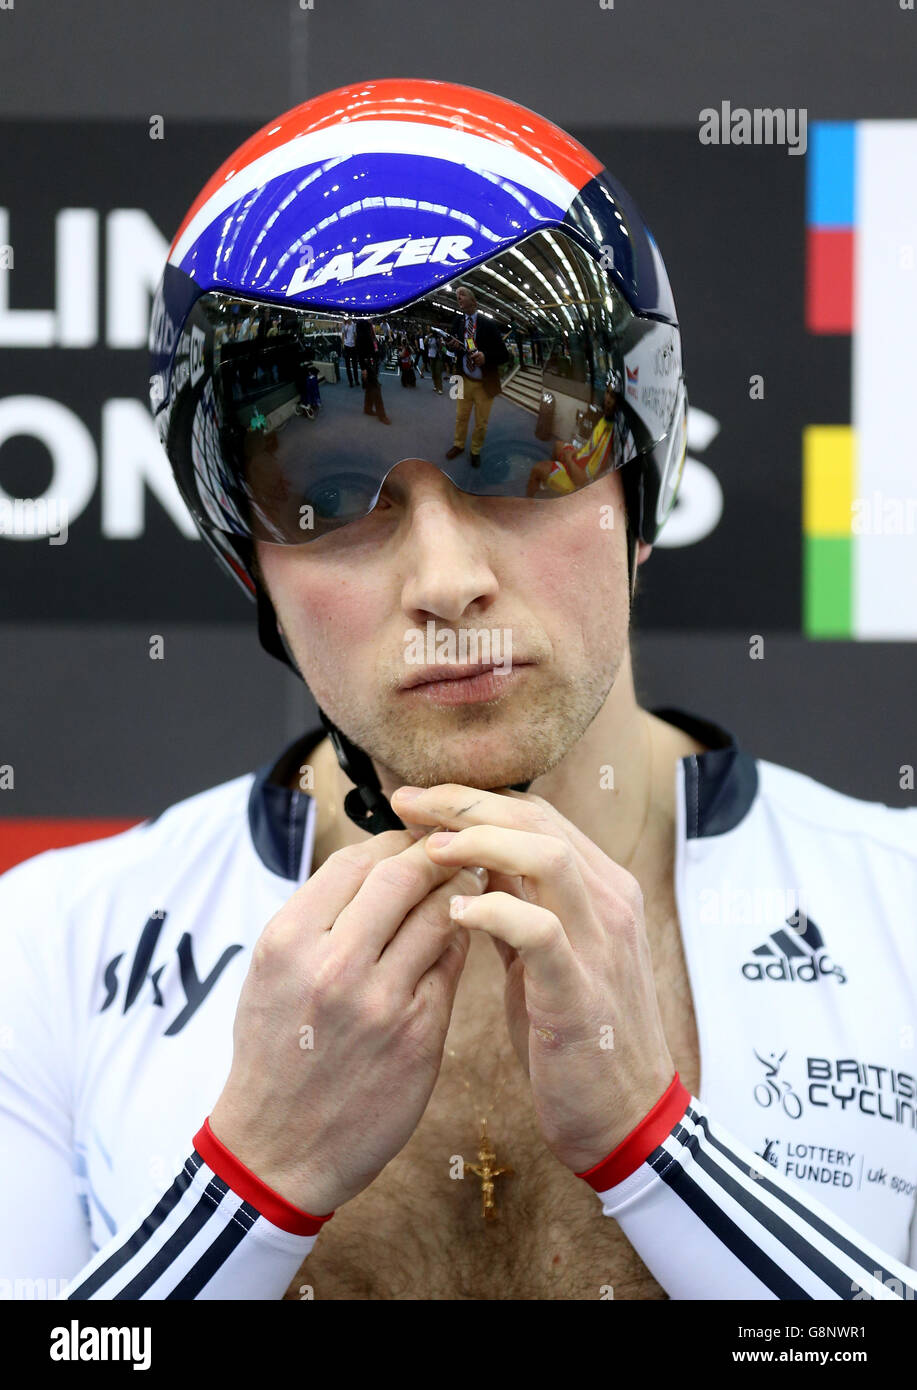 Great Britain's Jason Kenny durante il terzo giorno dei Campionati mondiali di ciclismo su pista UCI a Lee Valley VeloPark, Londra. Foto Stock